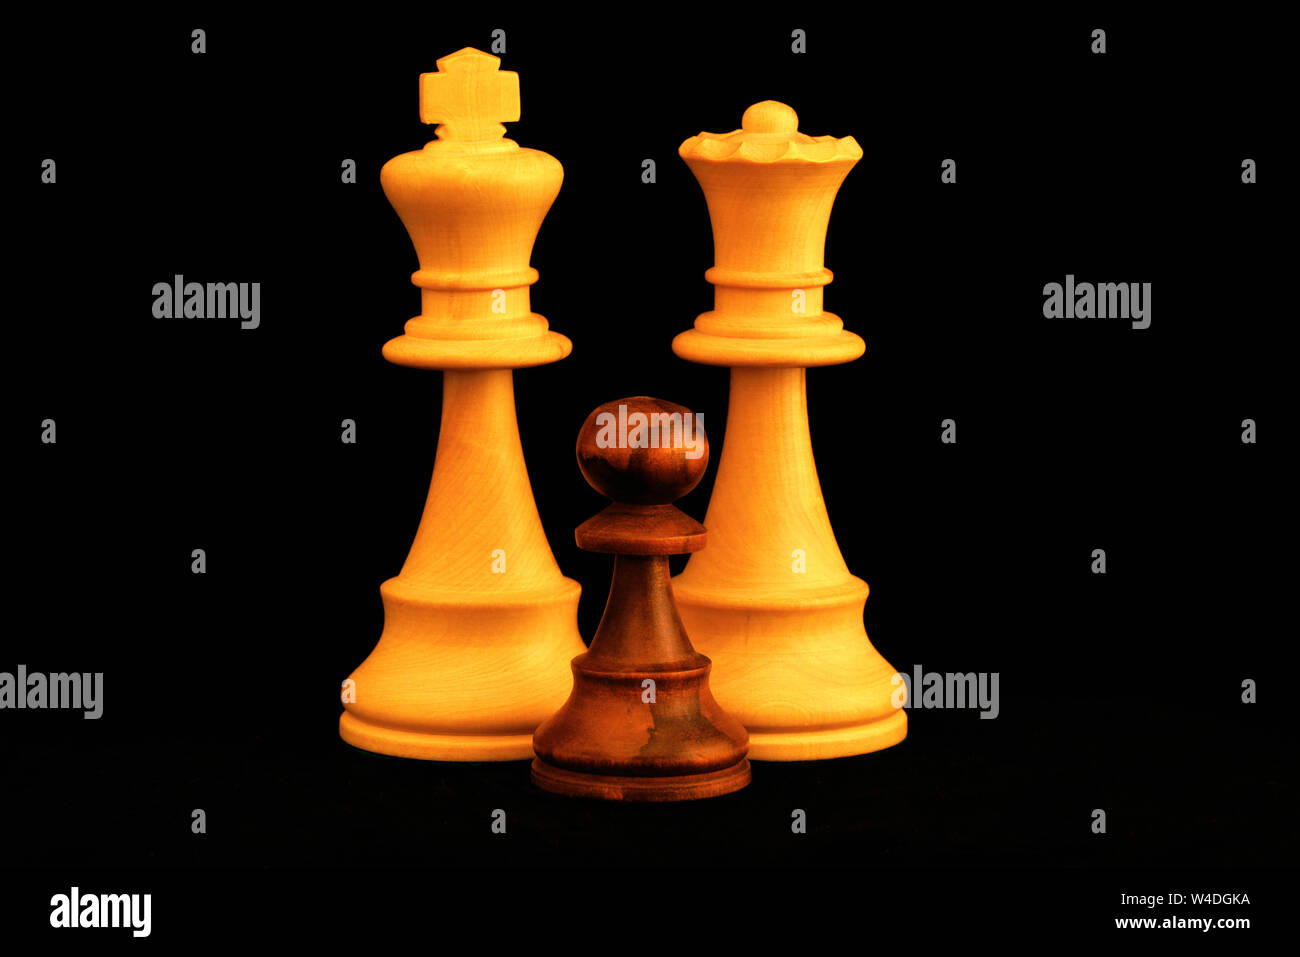 Re bianco e la regina con il pedone nero famiglia come interracial adozione del concetto. Standard del gioco degli scacchi pezzi di legno su sfondo nero Foto Stock